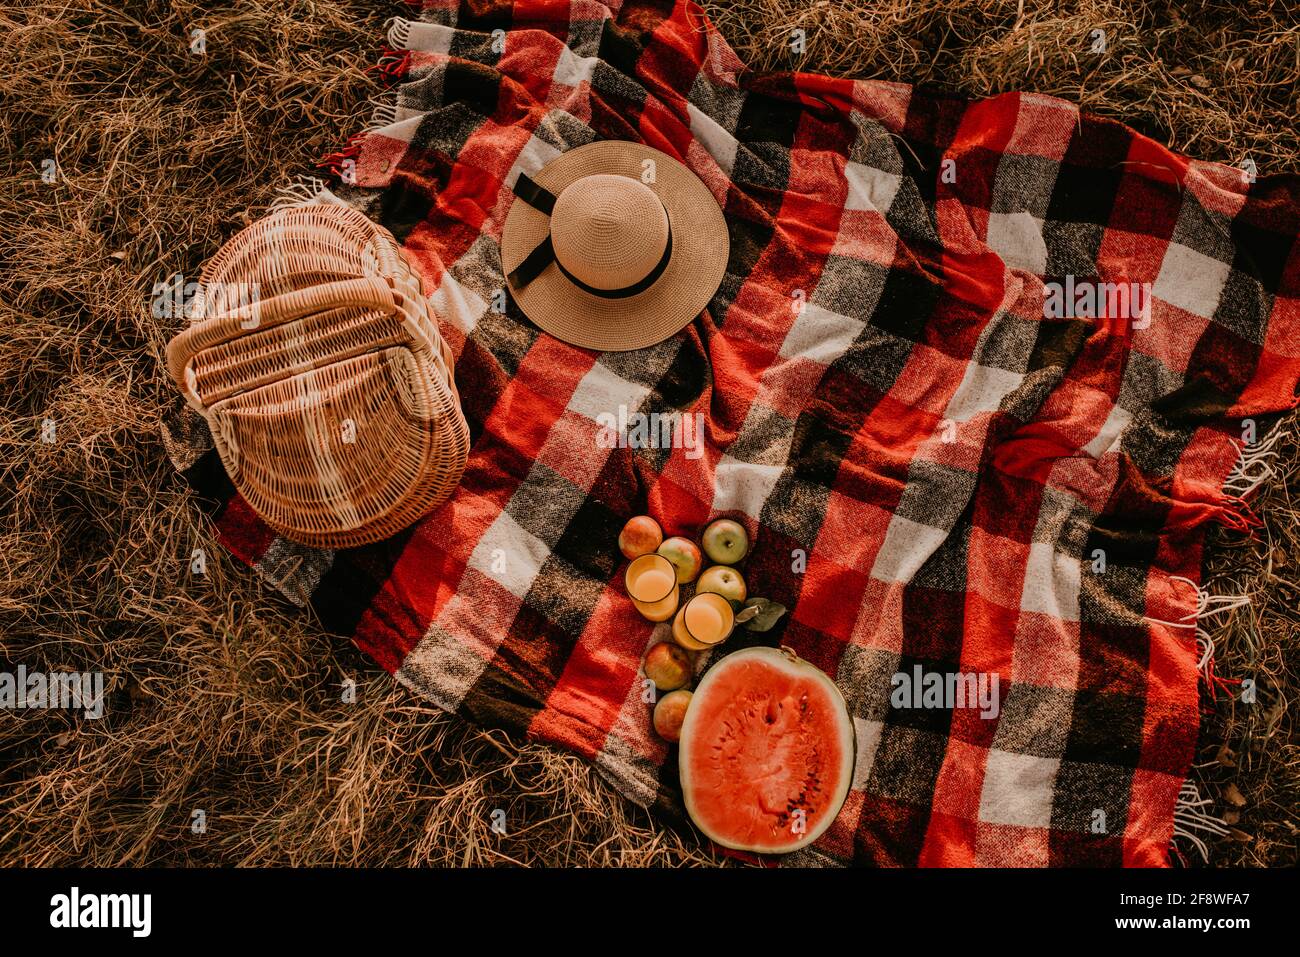 Reisedecke kariert rot kariert kariert im Sommer auf Gras an sonnigen Tag für Picknick. Weidenkorb, verstreute Früchte, reife Äpfel, saftig geschnitten Wassermelone Samen Stockfoto